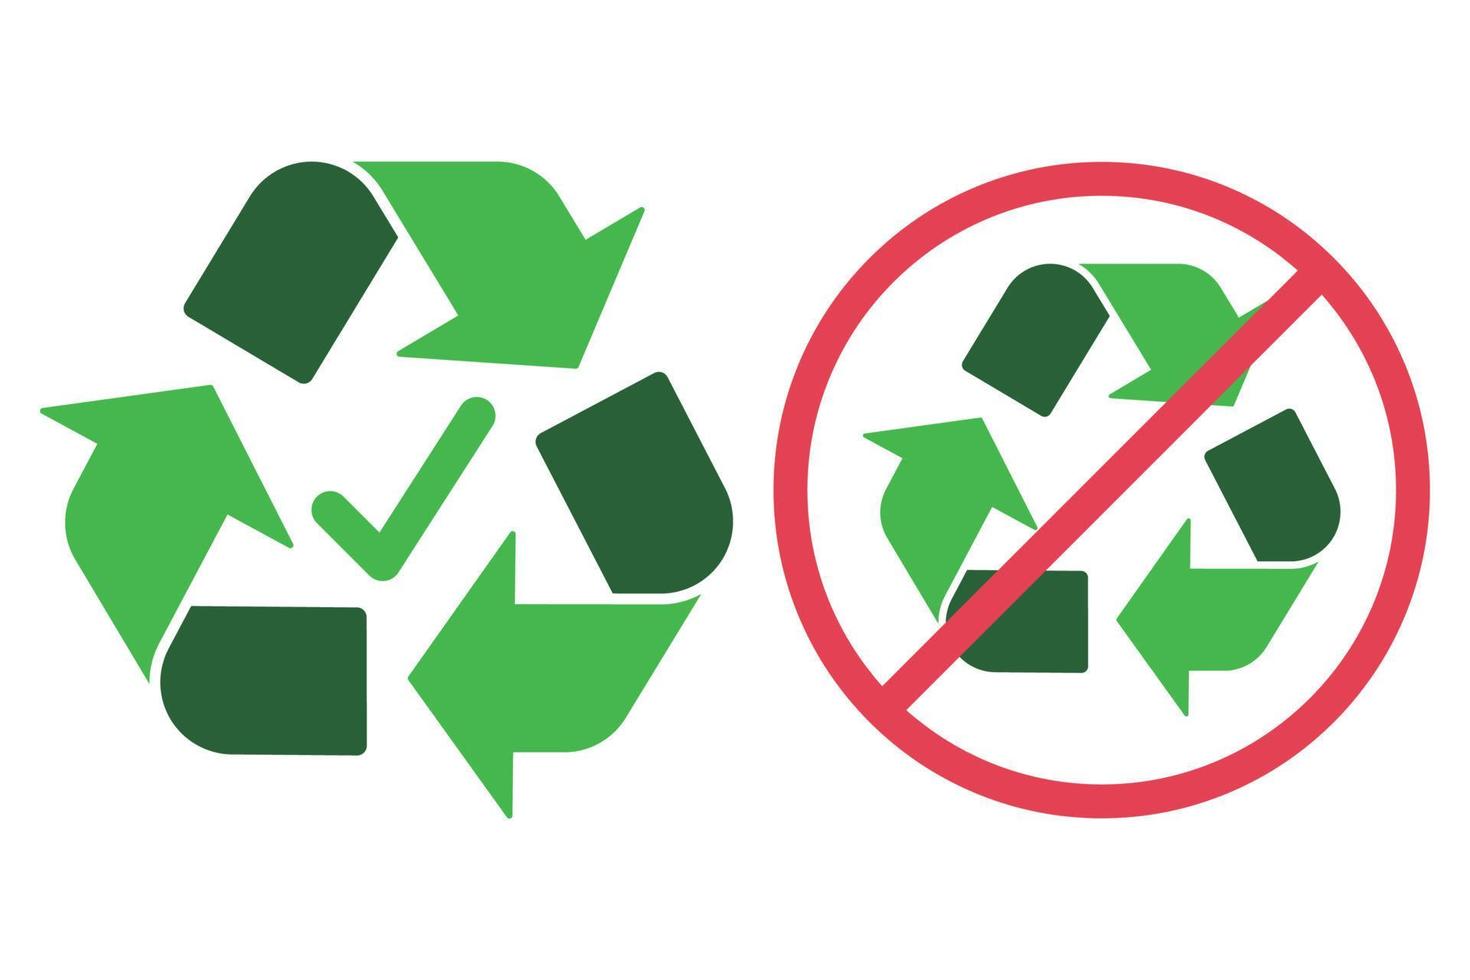 letreros reciclables y no reciclables vector